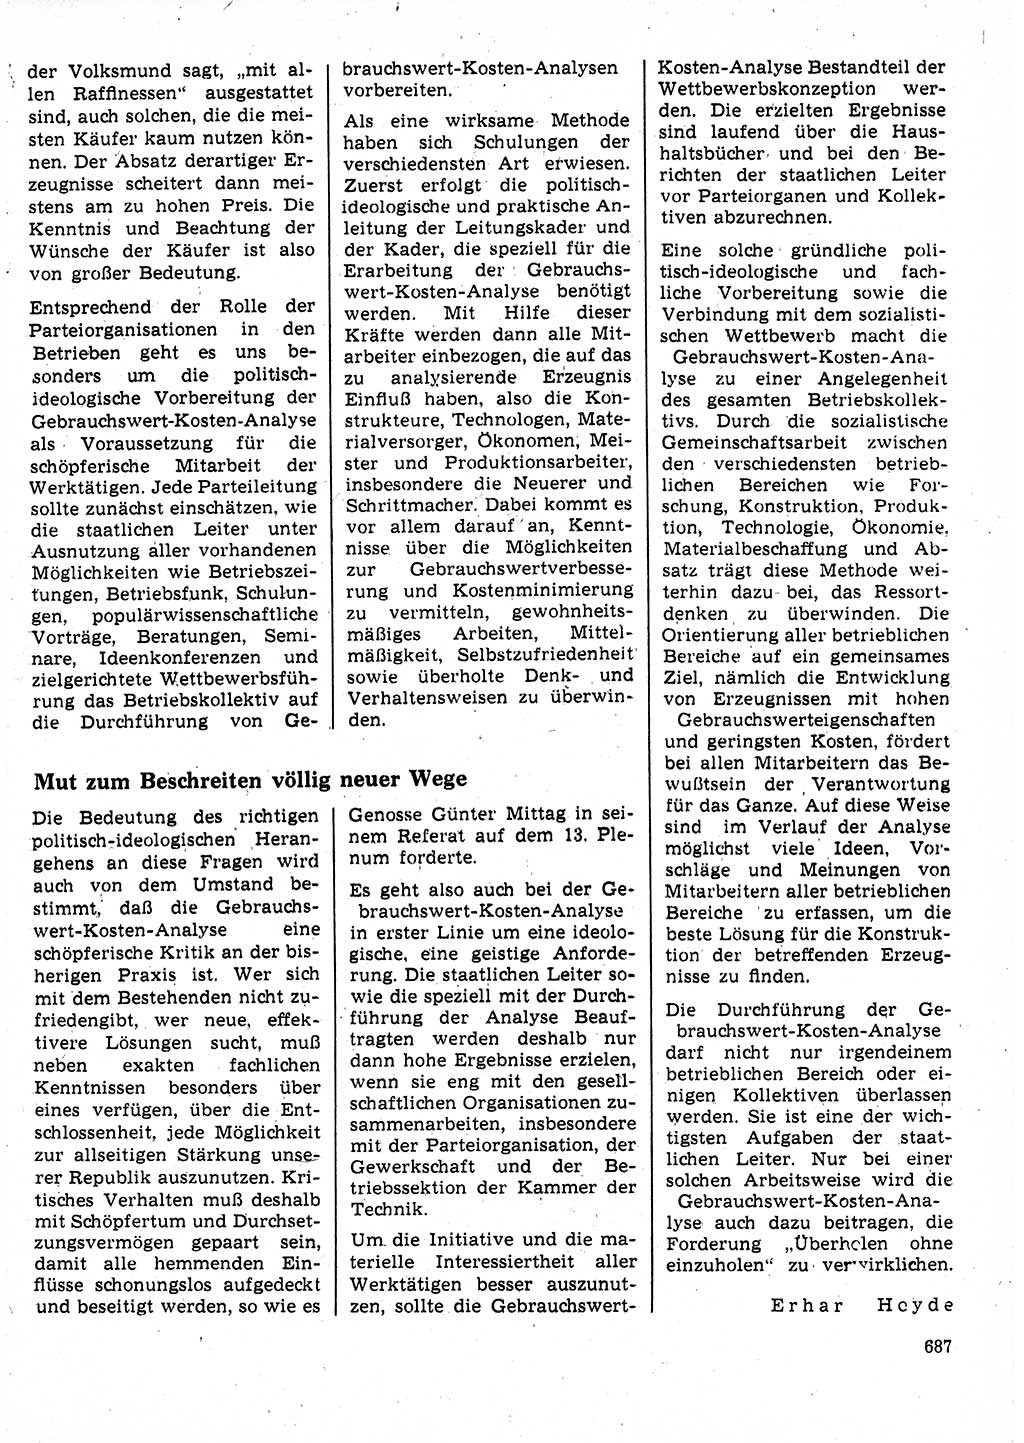 Neuer Weg (NW), Organ des Zentralkomitees (ZK) der SED (Sozialistische Einheitspartei Deutschlands) für Fragen des Parteilebens, 25. Jahrgang [Deutsche Demokratische Republik (DDR)] 1970, Seite 687 (NW ZK SED DDR 1970, S. 687)